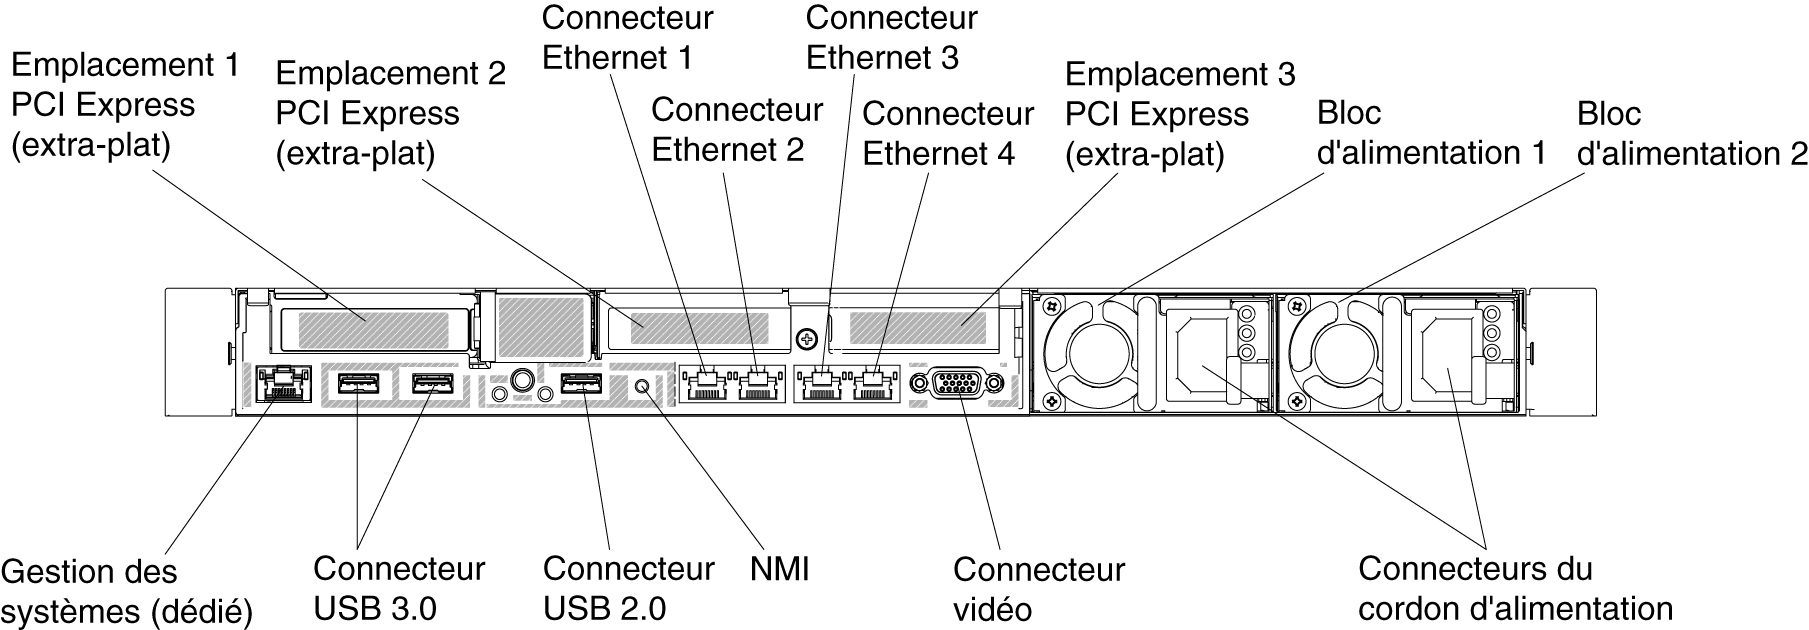 Illustration de la vue arrière du connecteur lorsque trois assemblages de cartes mezzanines PCI extra-plats sont installés.